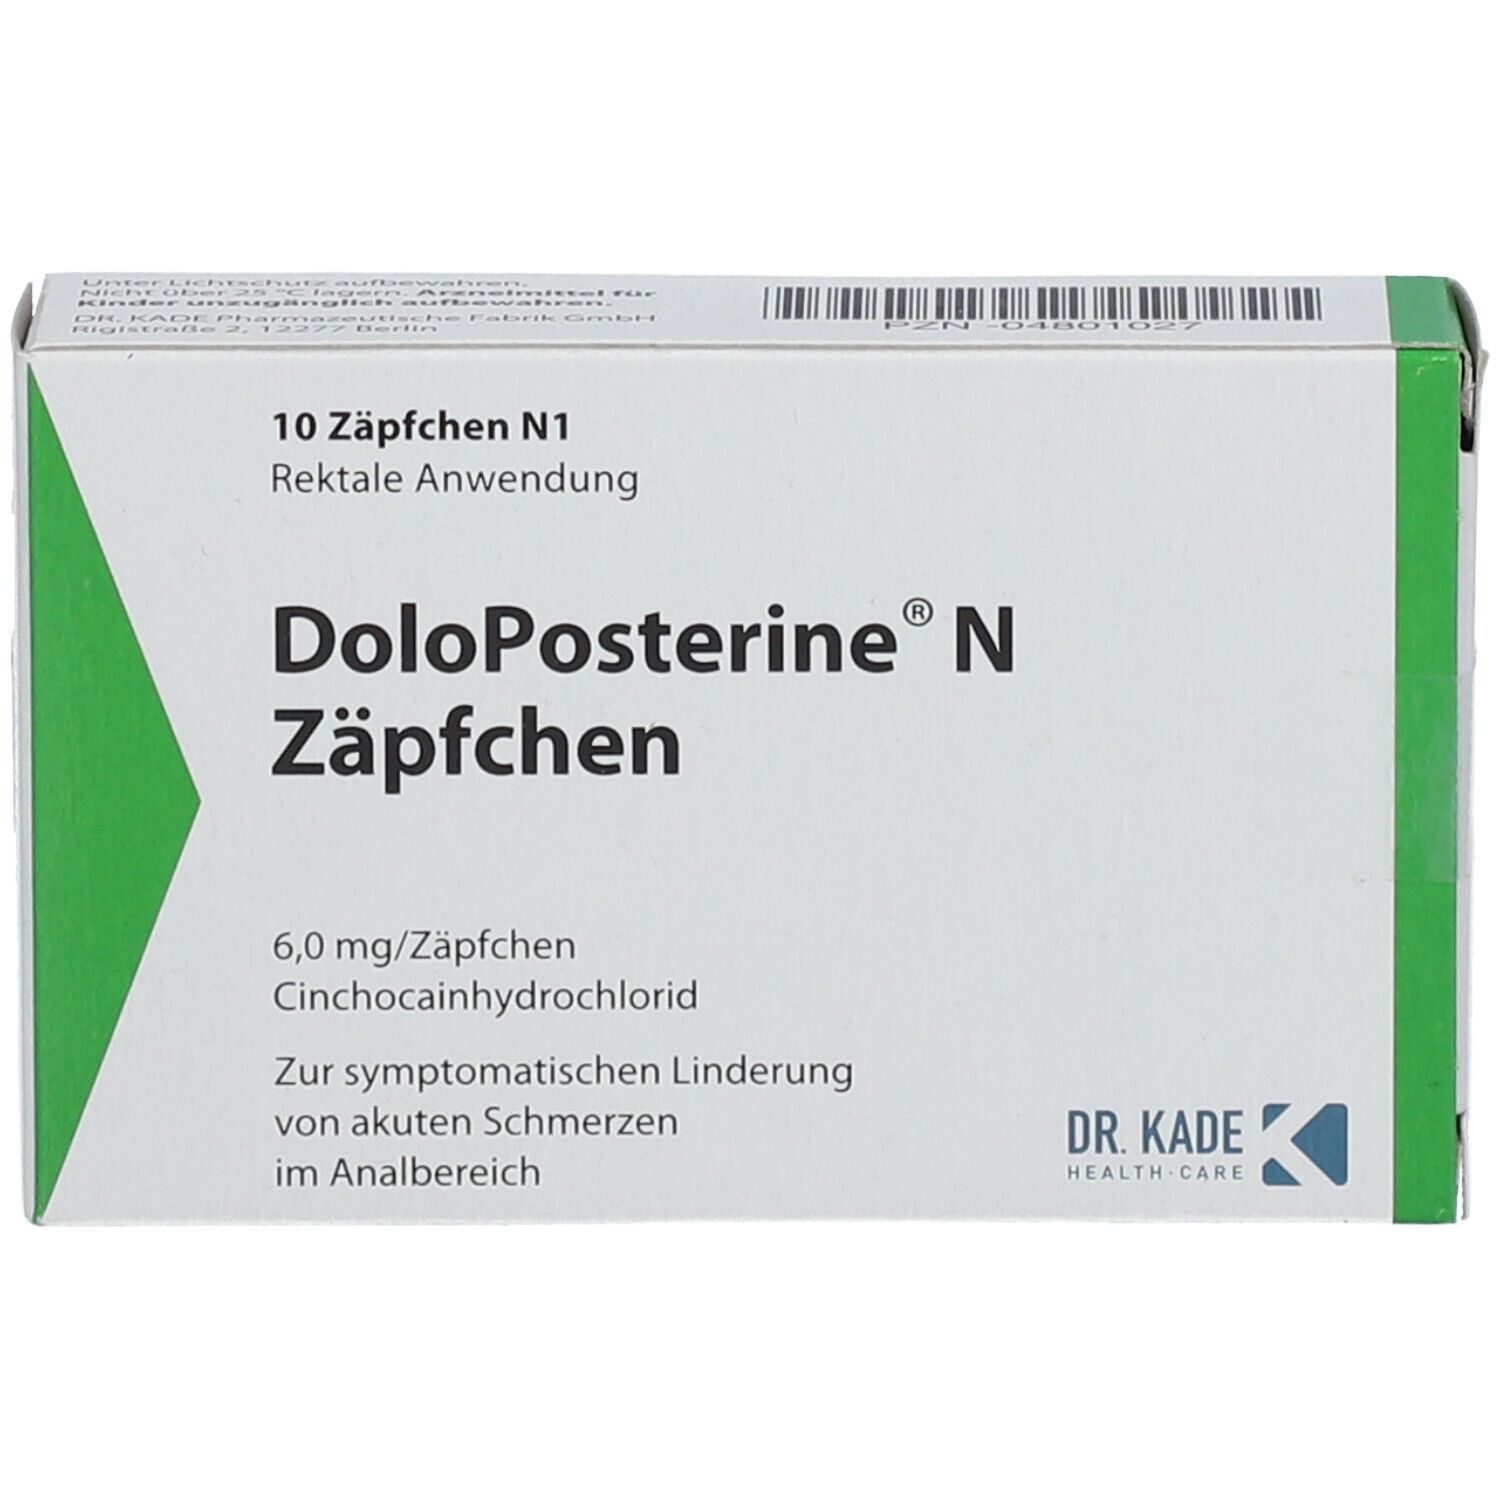 DoloPosterine ® N Zäpfchen.